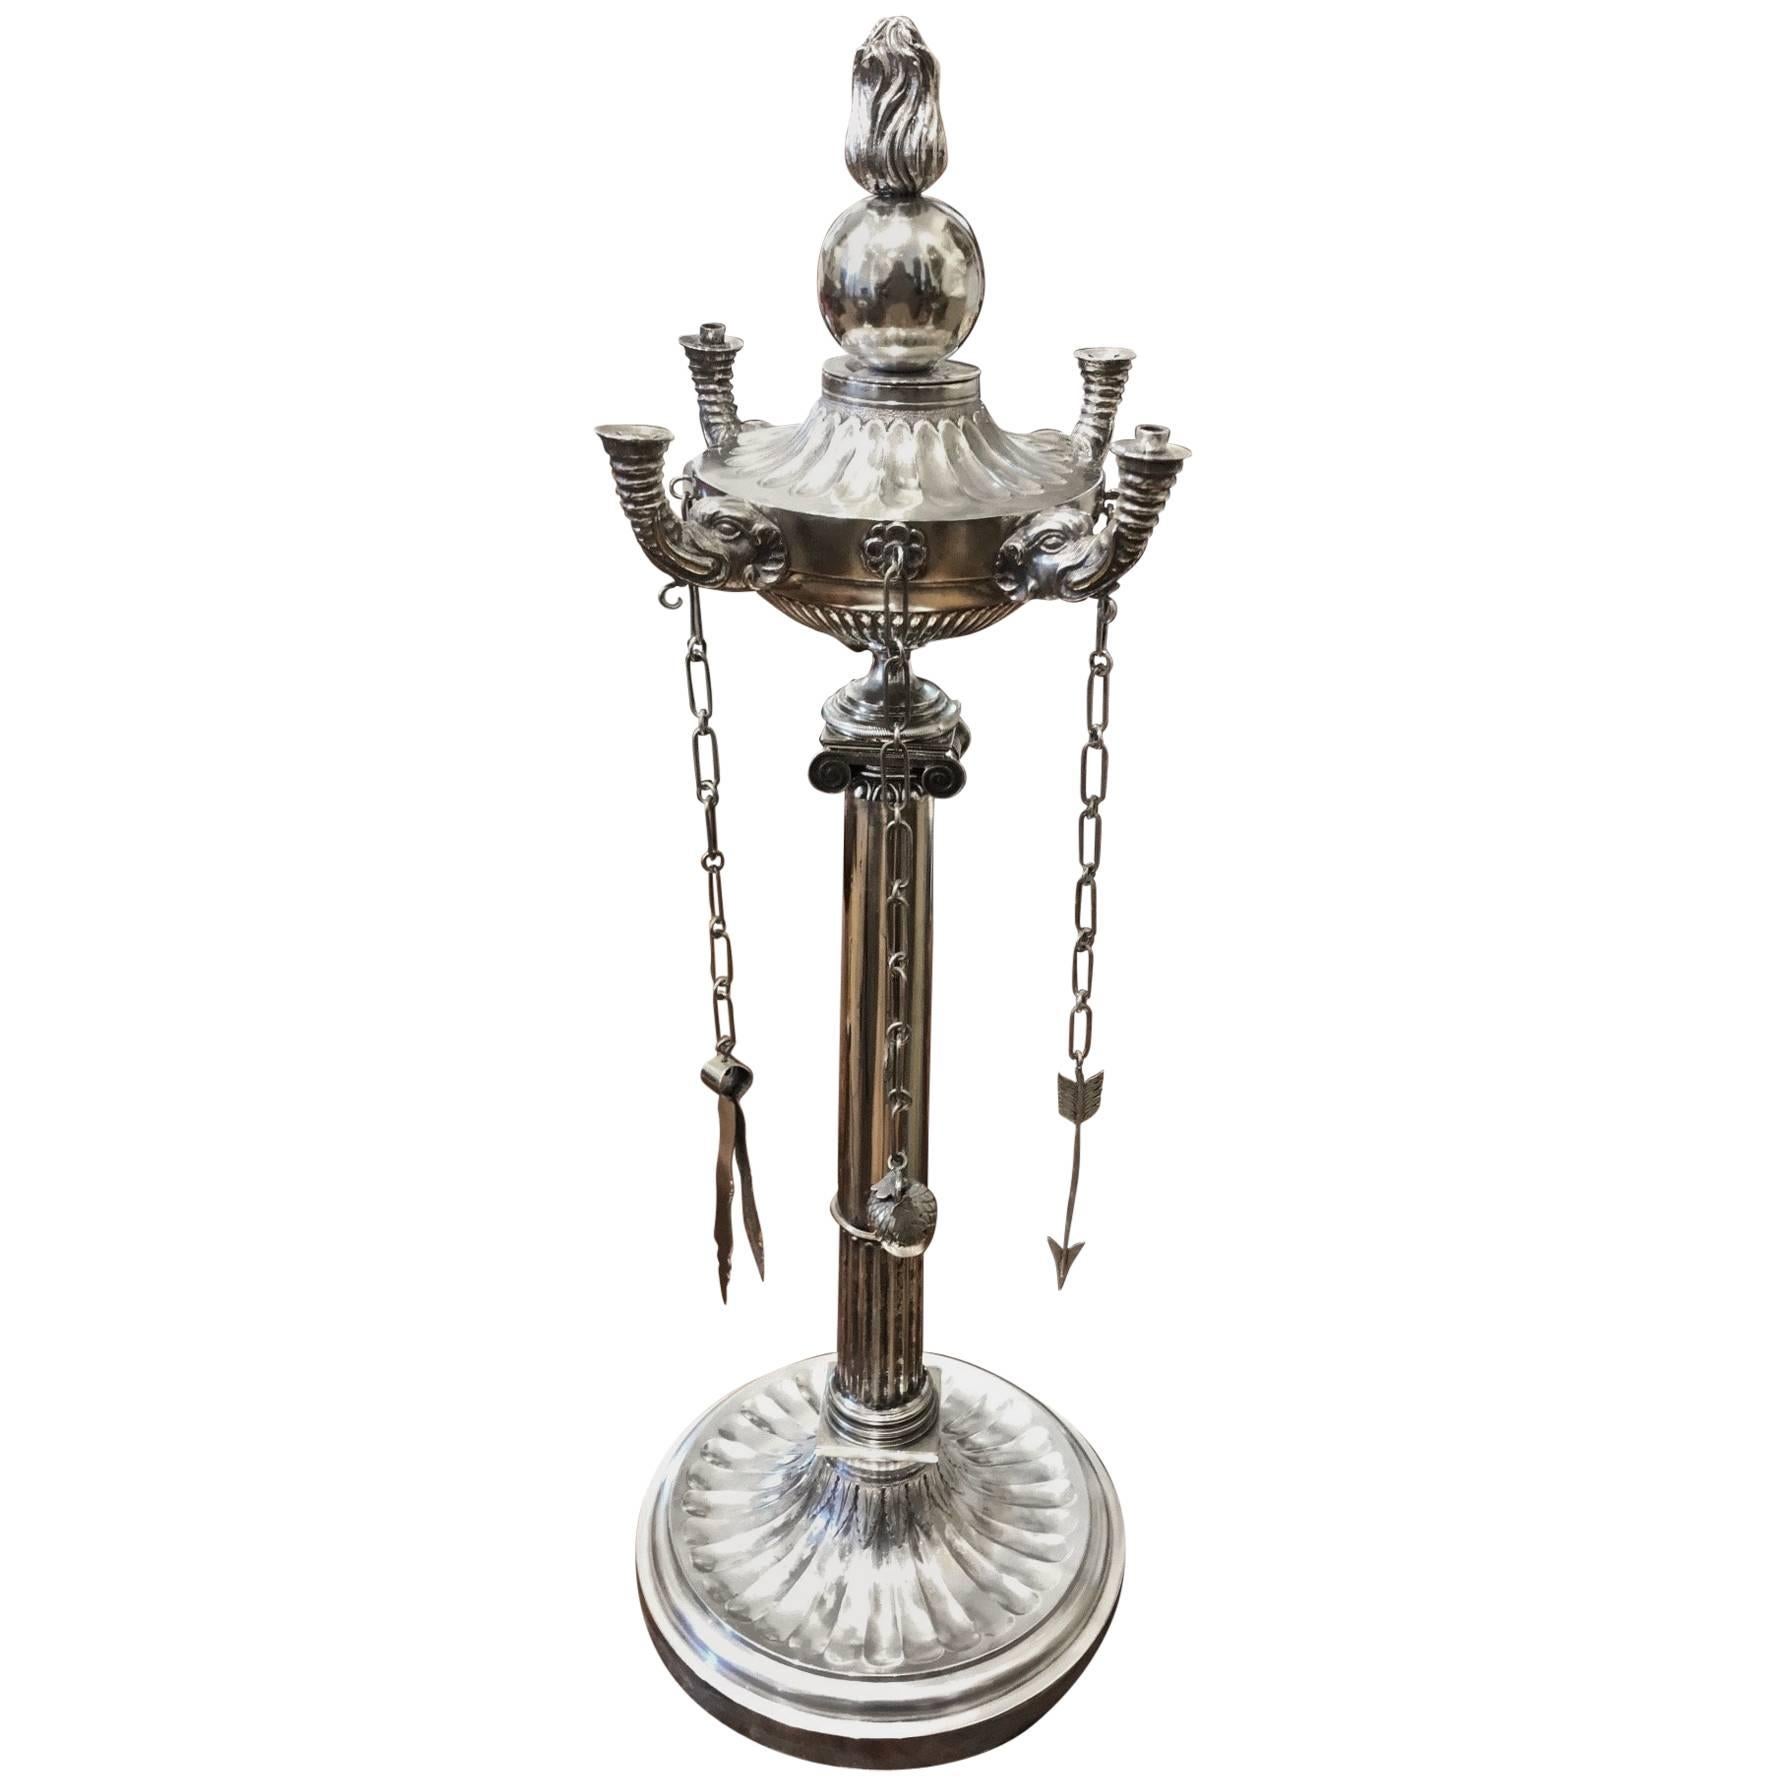 Seltene indische neoklassizistische Öllampe aus Silber des 19. Jahrhunderts